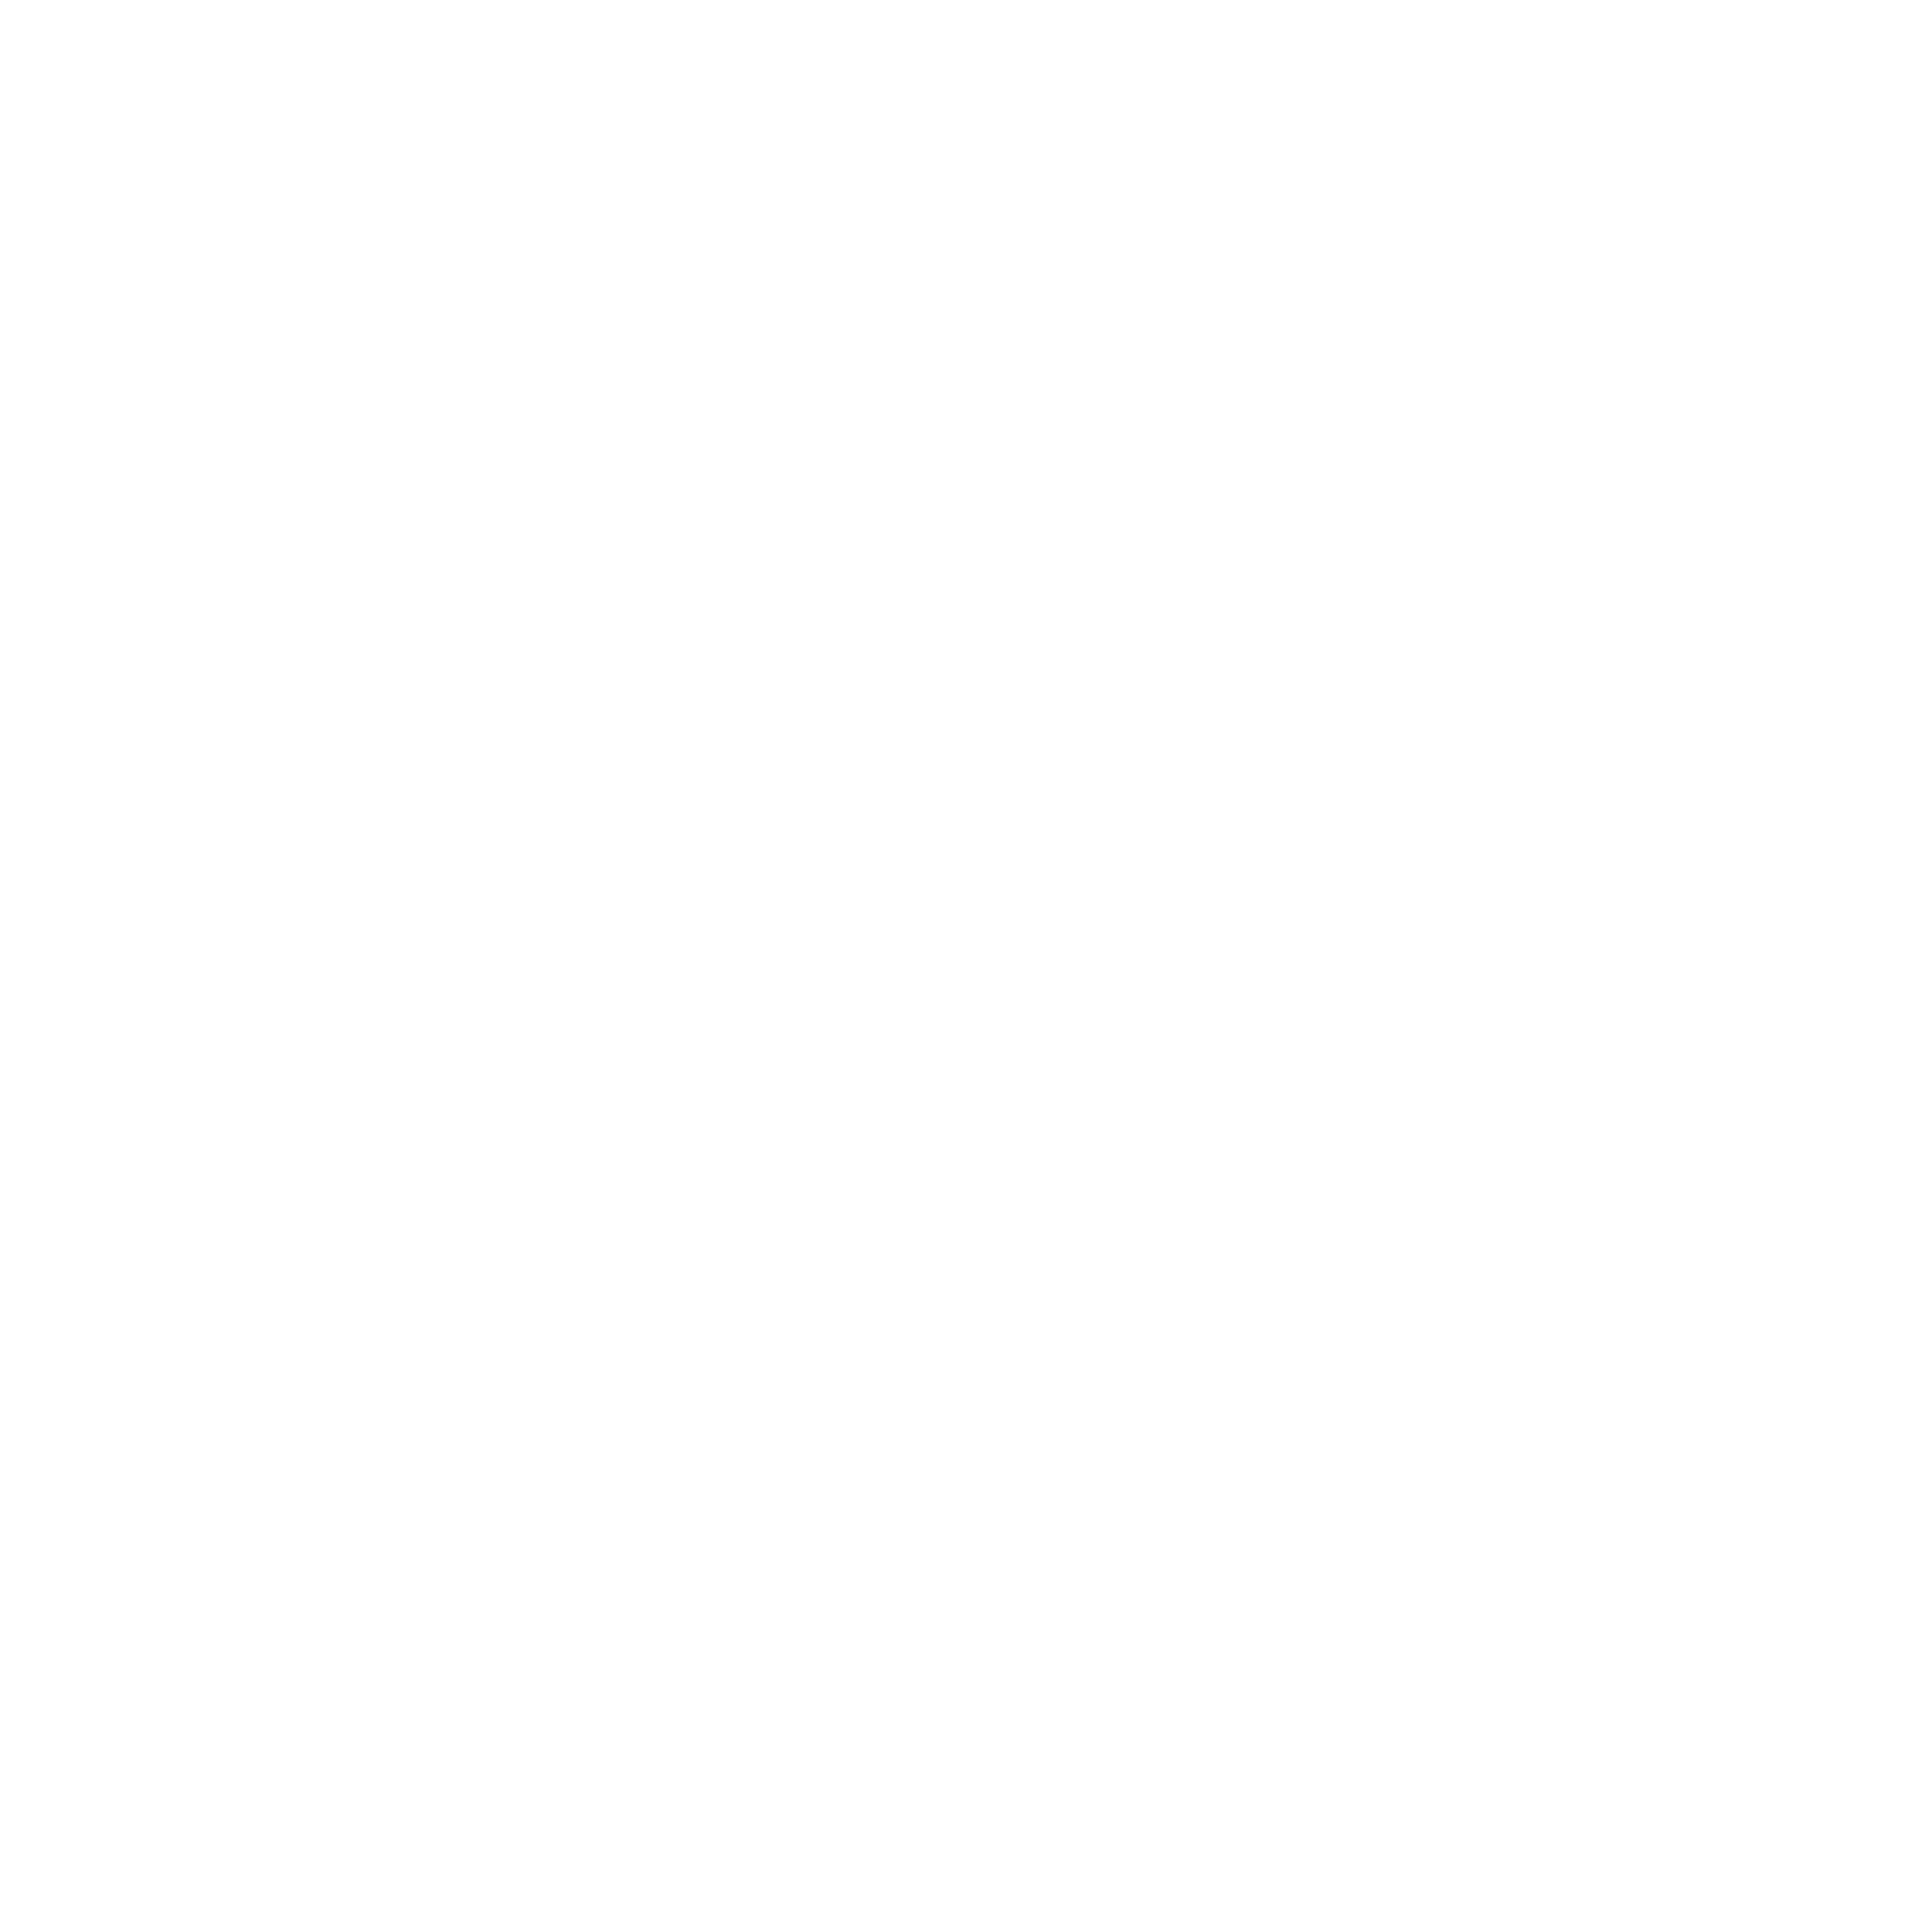 Hôtel Le Walt Paris - Tour Eiffel - Paris